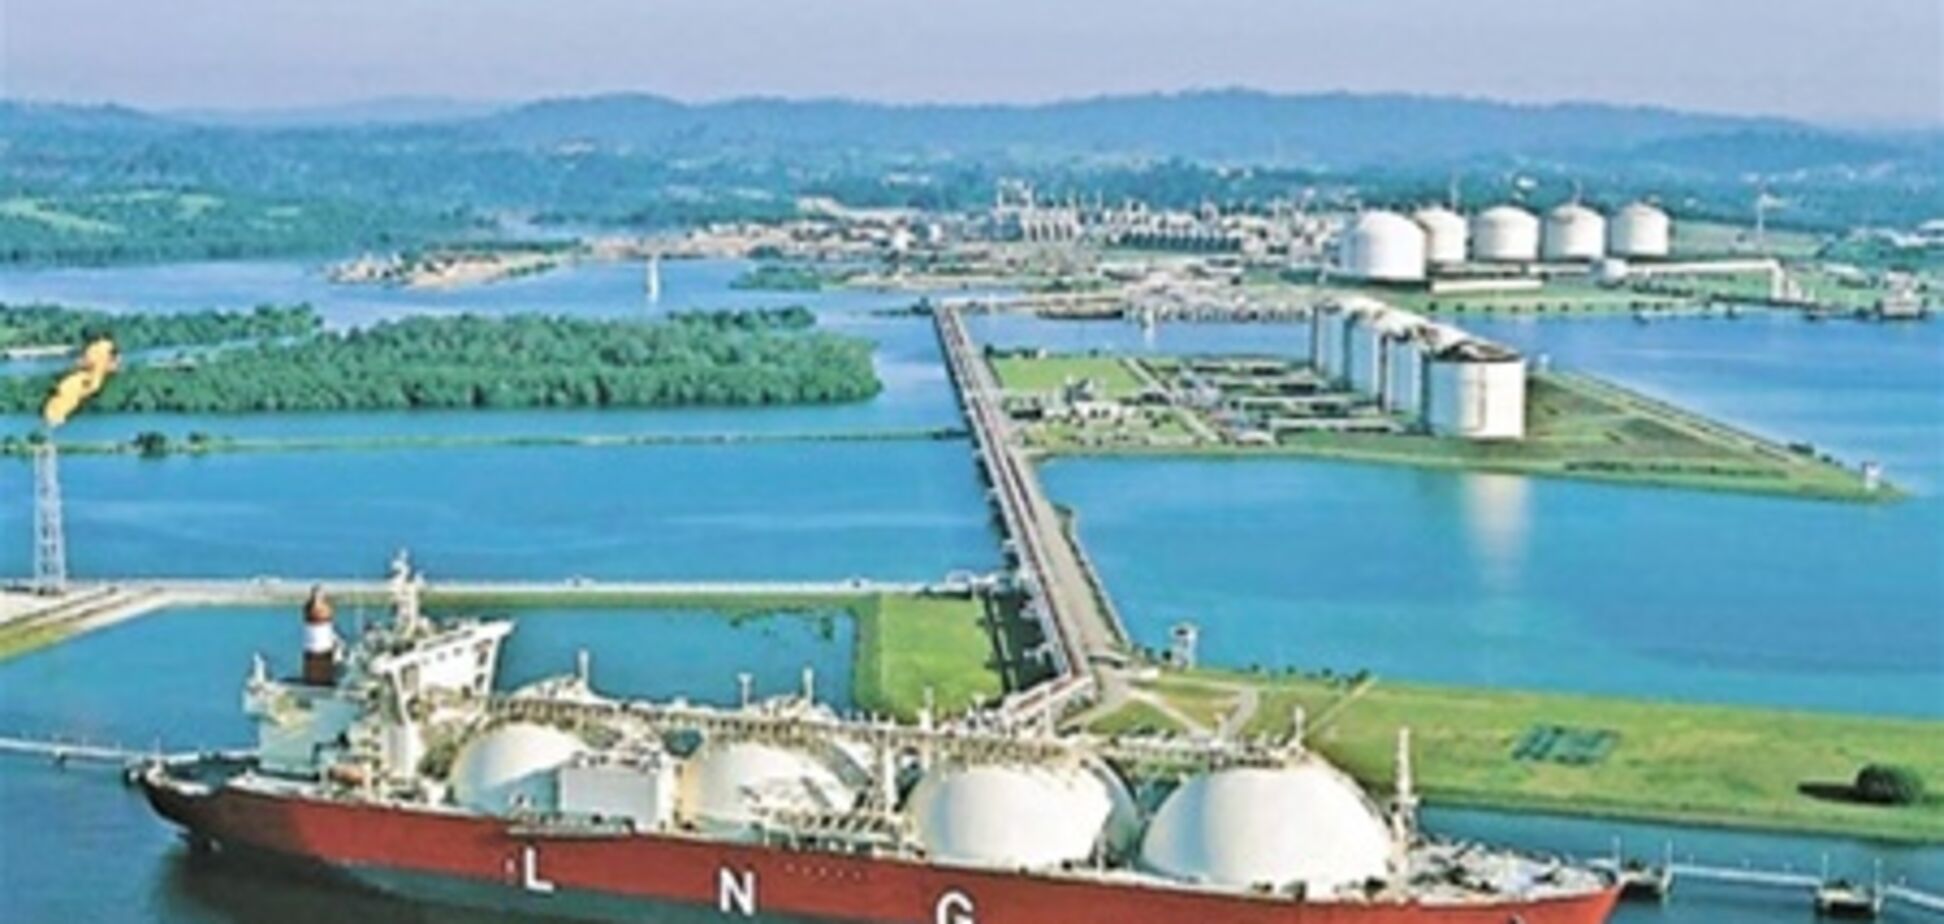 Подписавший соглашение об LNG терминале признал, что не имел на это полномочий